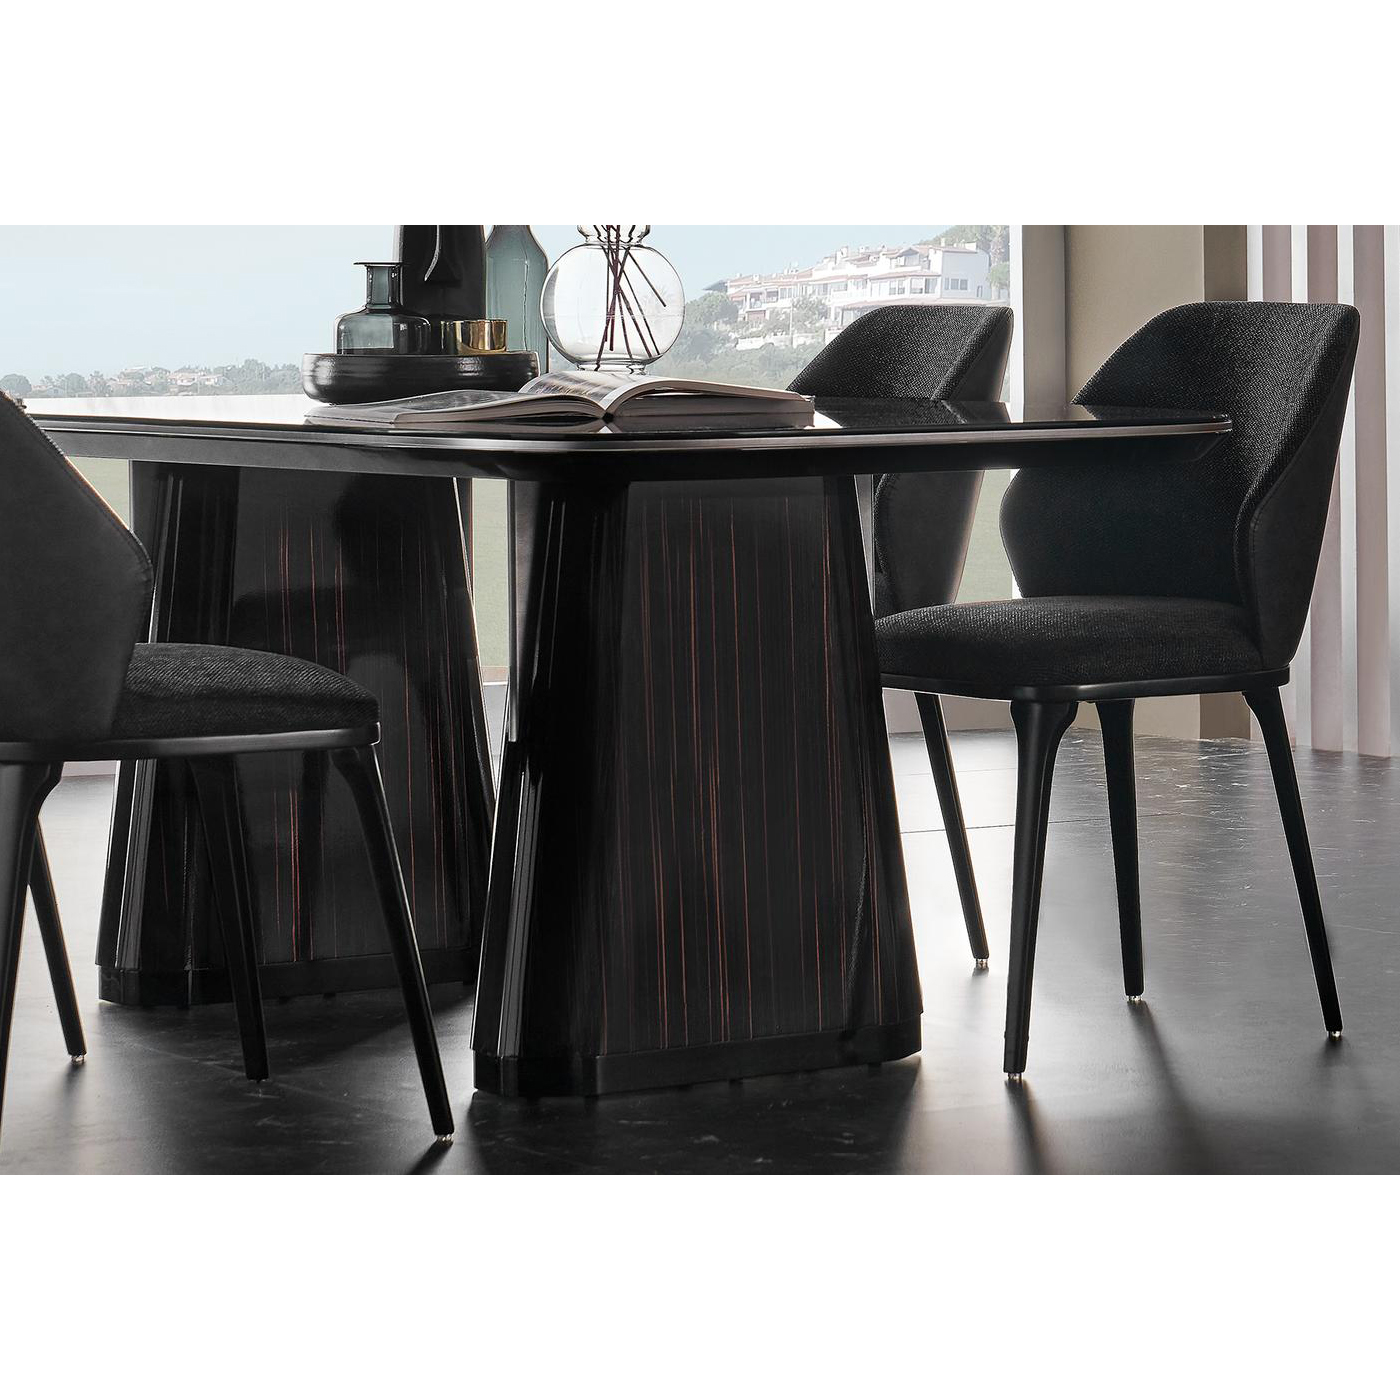 Стол обеденный Enza Home Valdera, прямоугольный, размер 200х100х76 см, стеклянная поверхность55555000000040